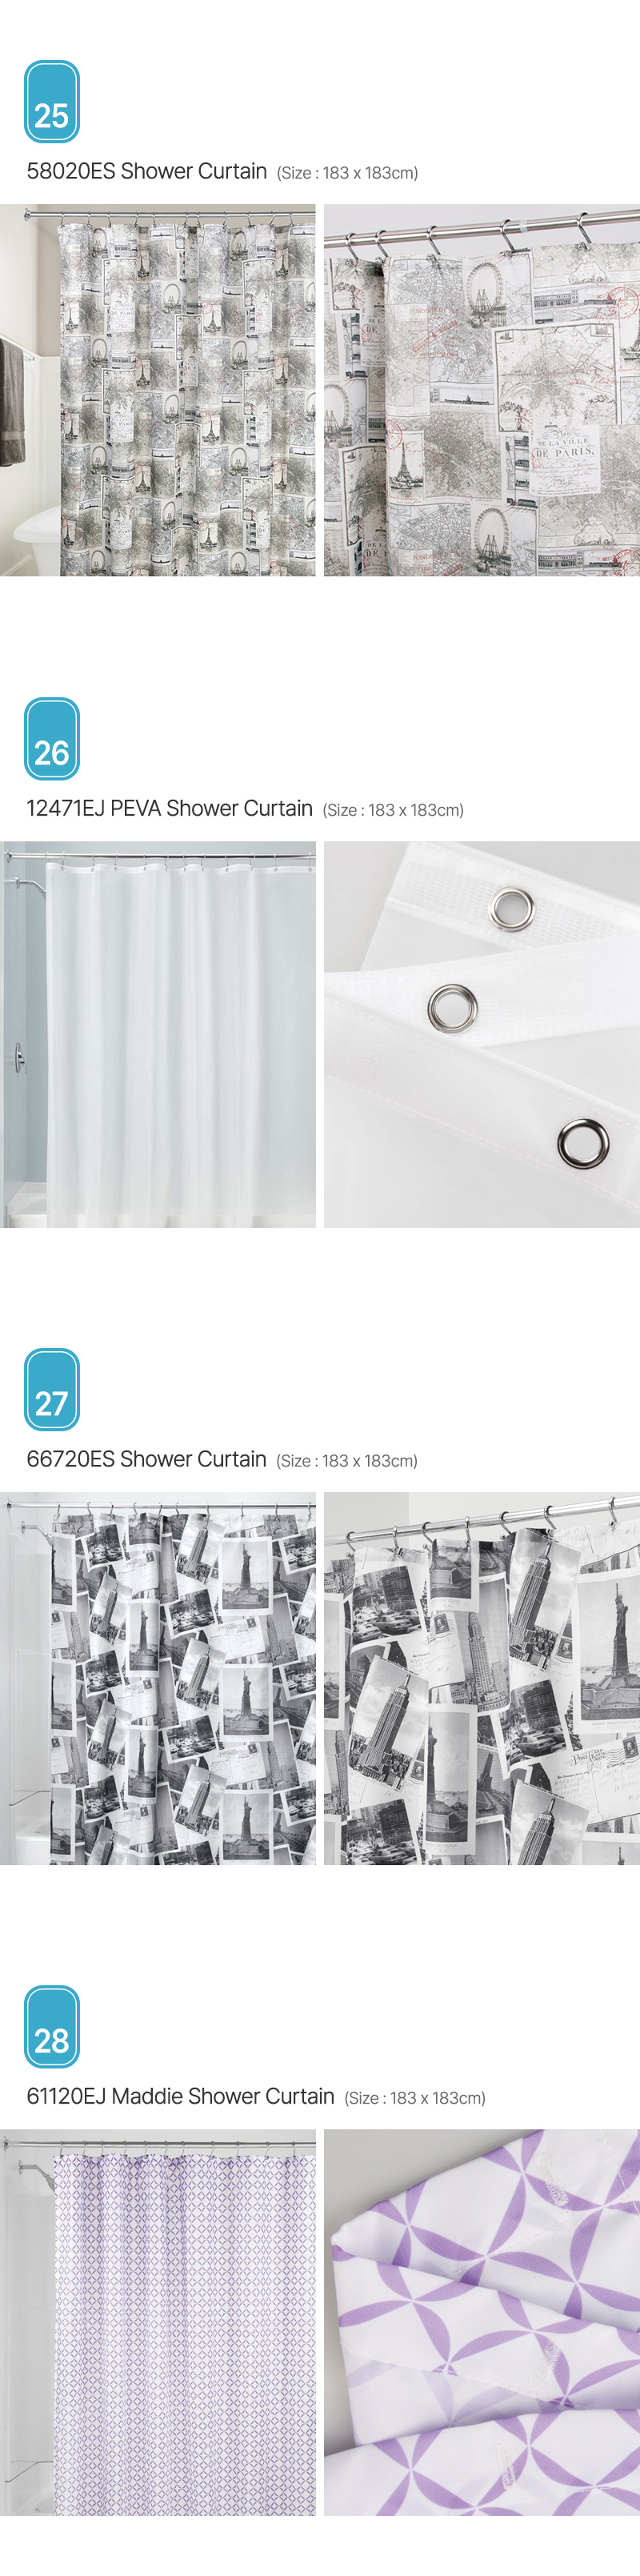 Aria_Shower-Curtain_07.jpg